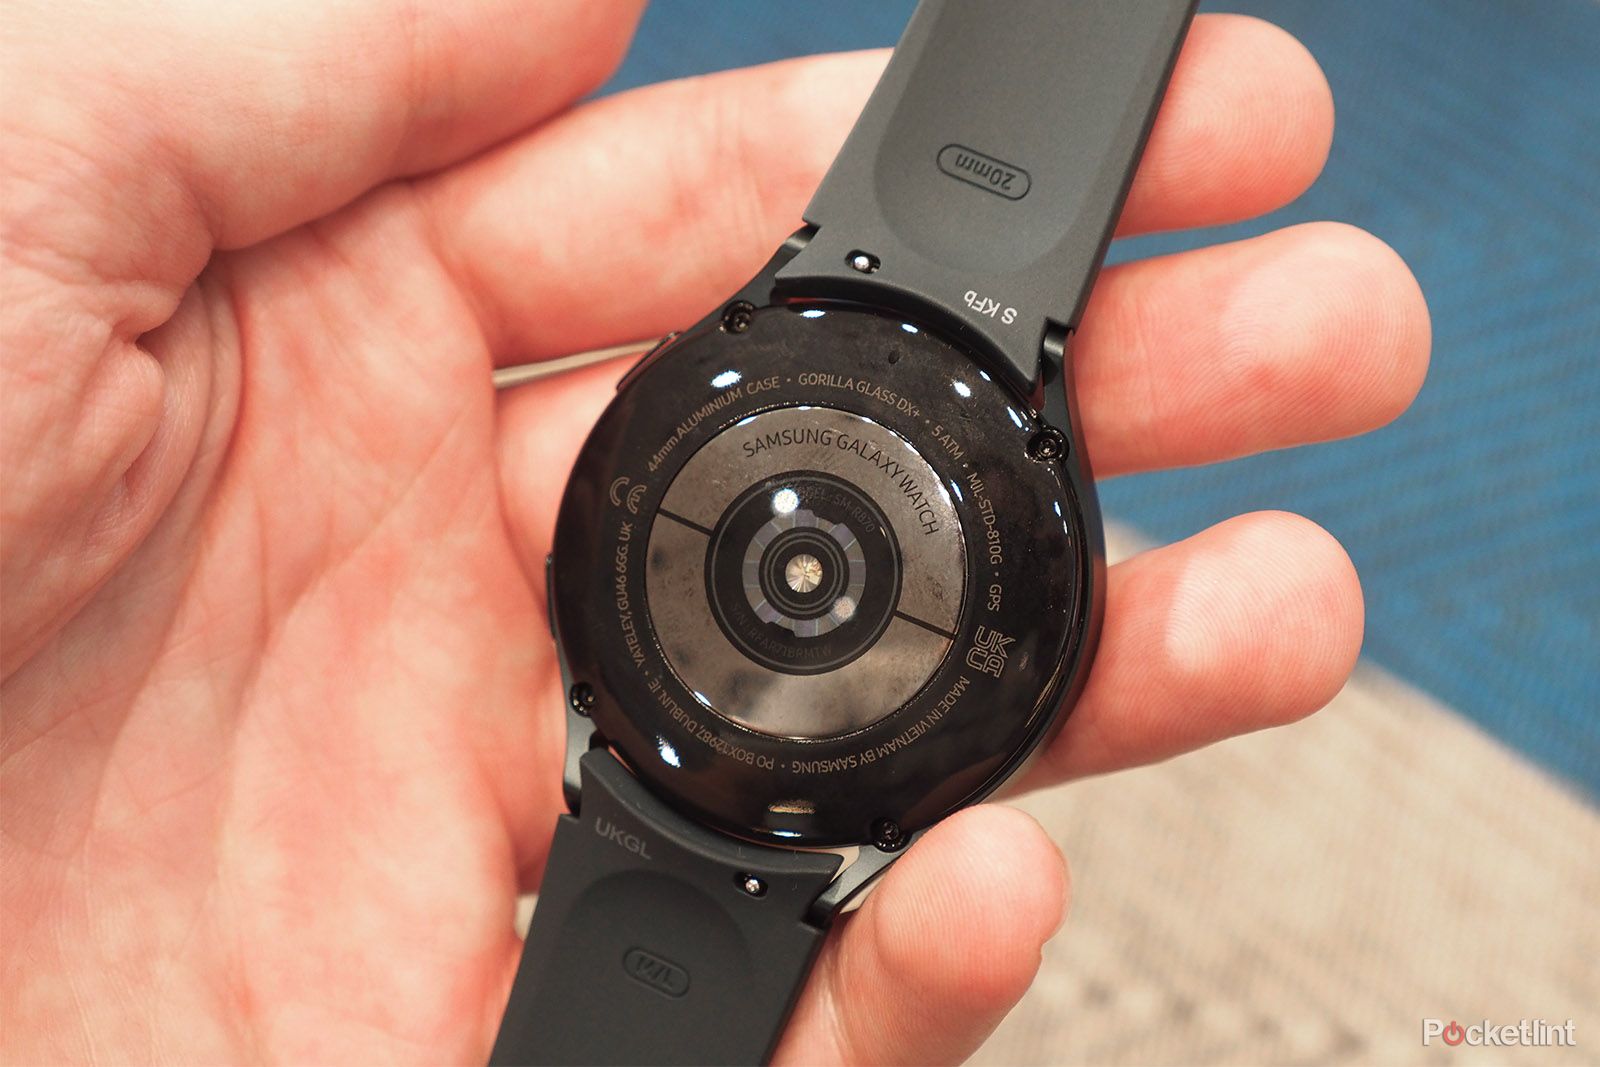 Samsung Galaxy Watch 4, análisis: review y características, precio